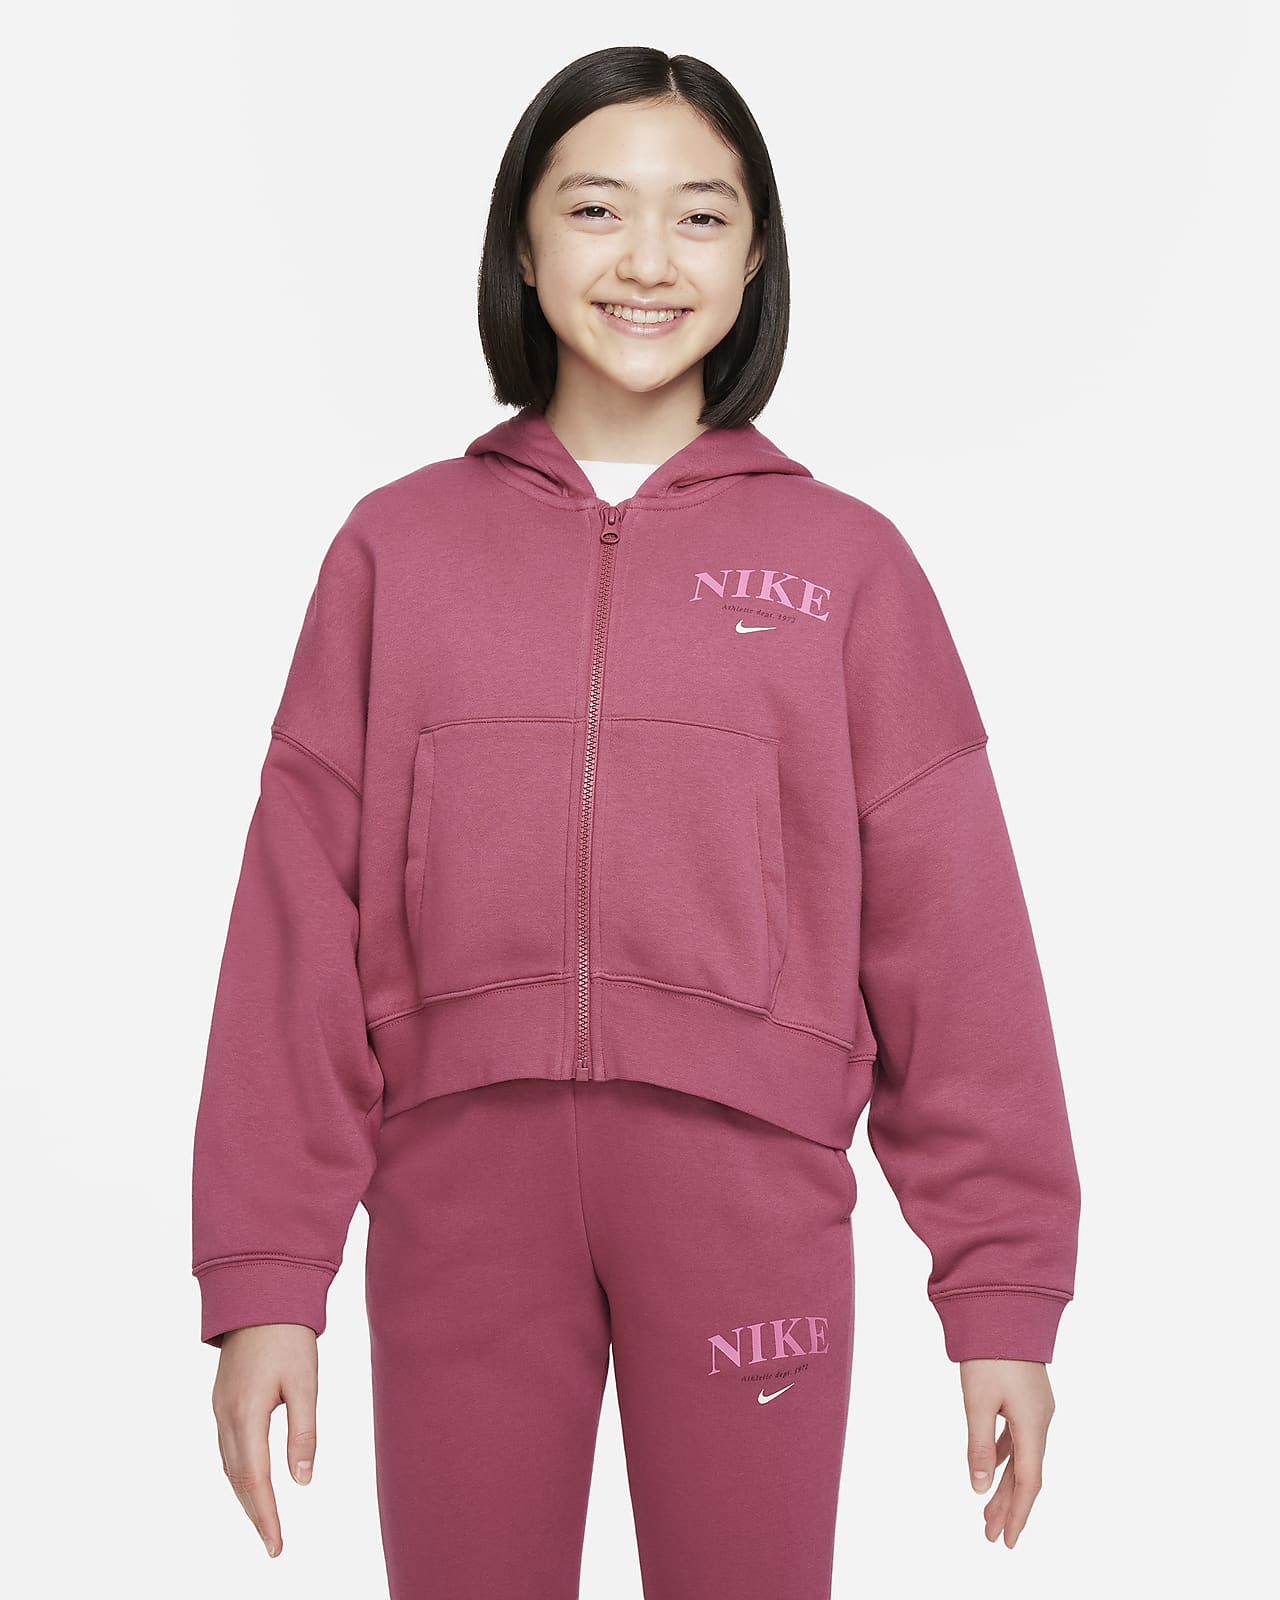 Flísová mikina s kapucí a dlouhým zipem Nike Sportswear Trend pro větší děti (dívky)